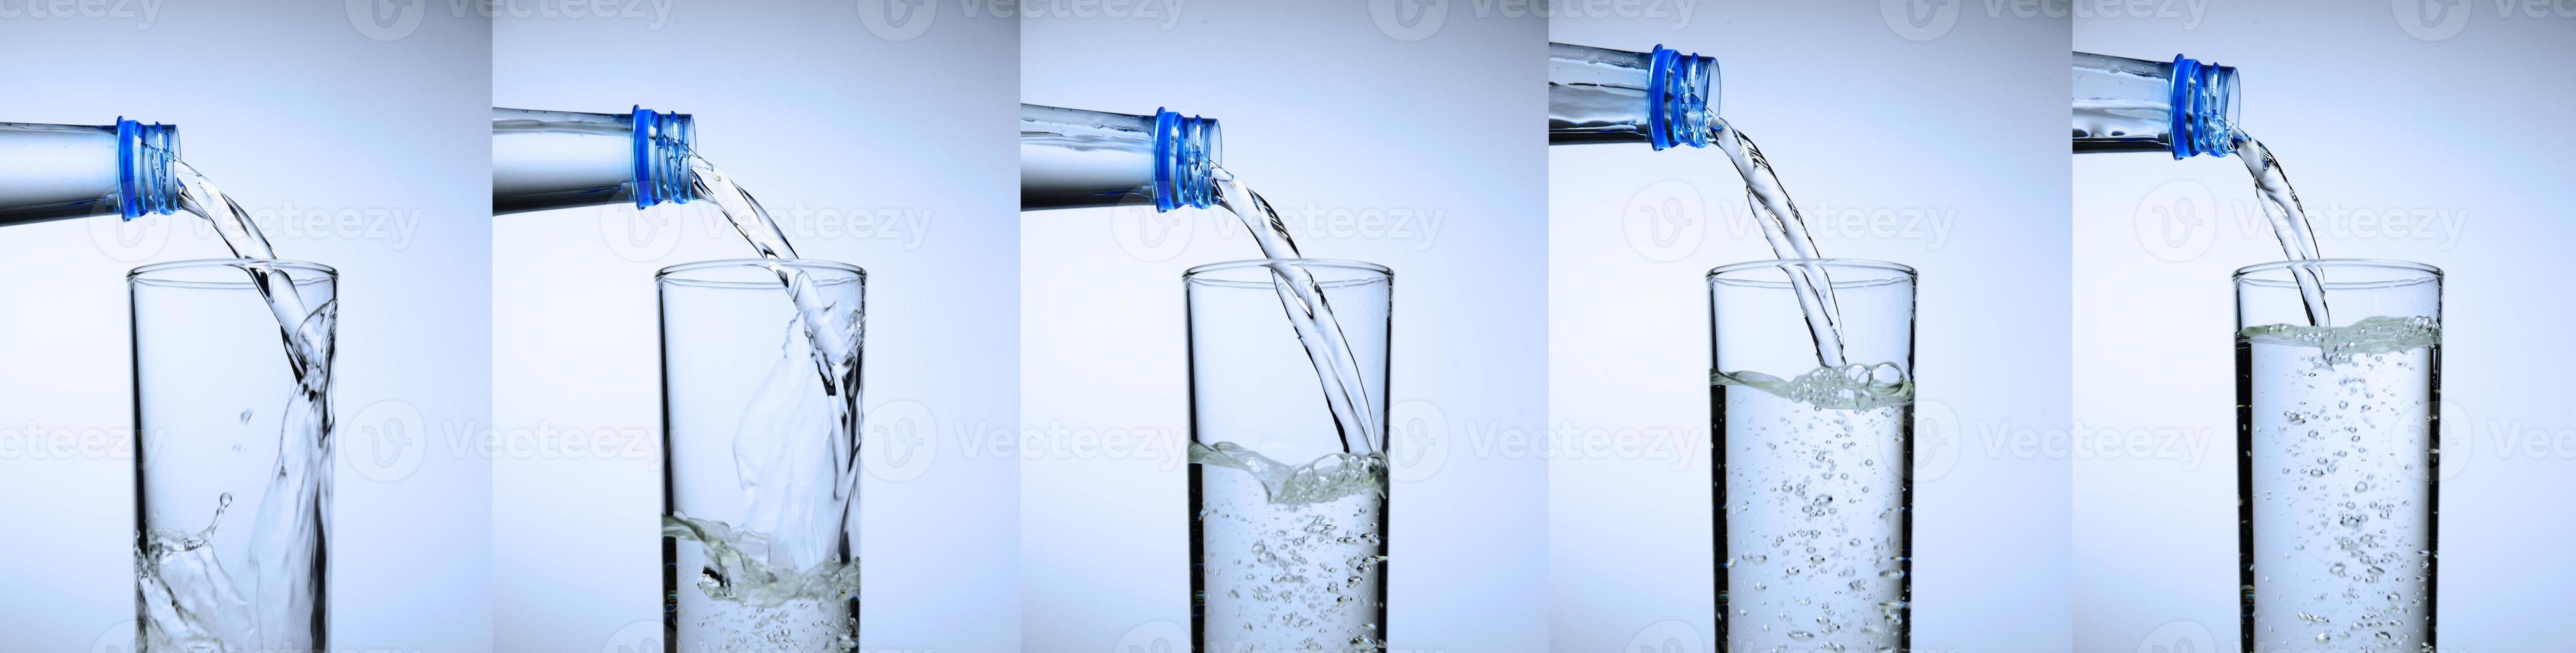 vidro está se enchendo de água. coleção de respingos de água no fundo branco. foto